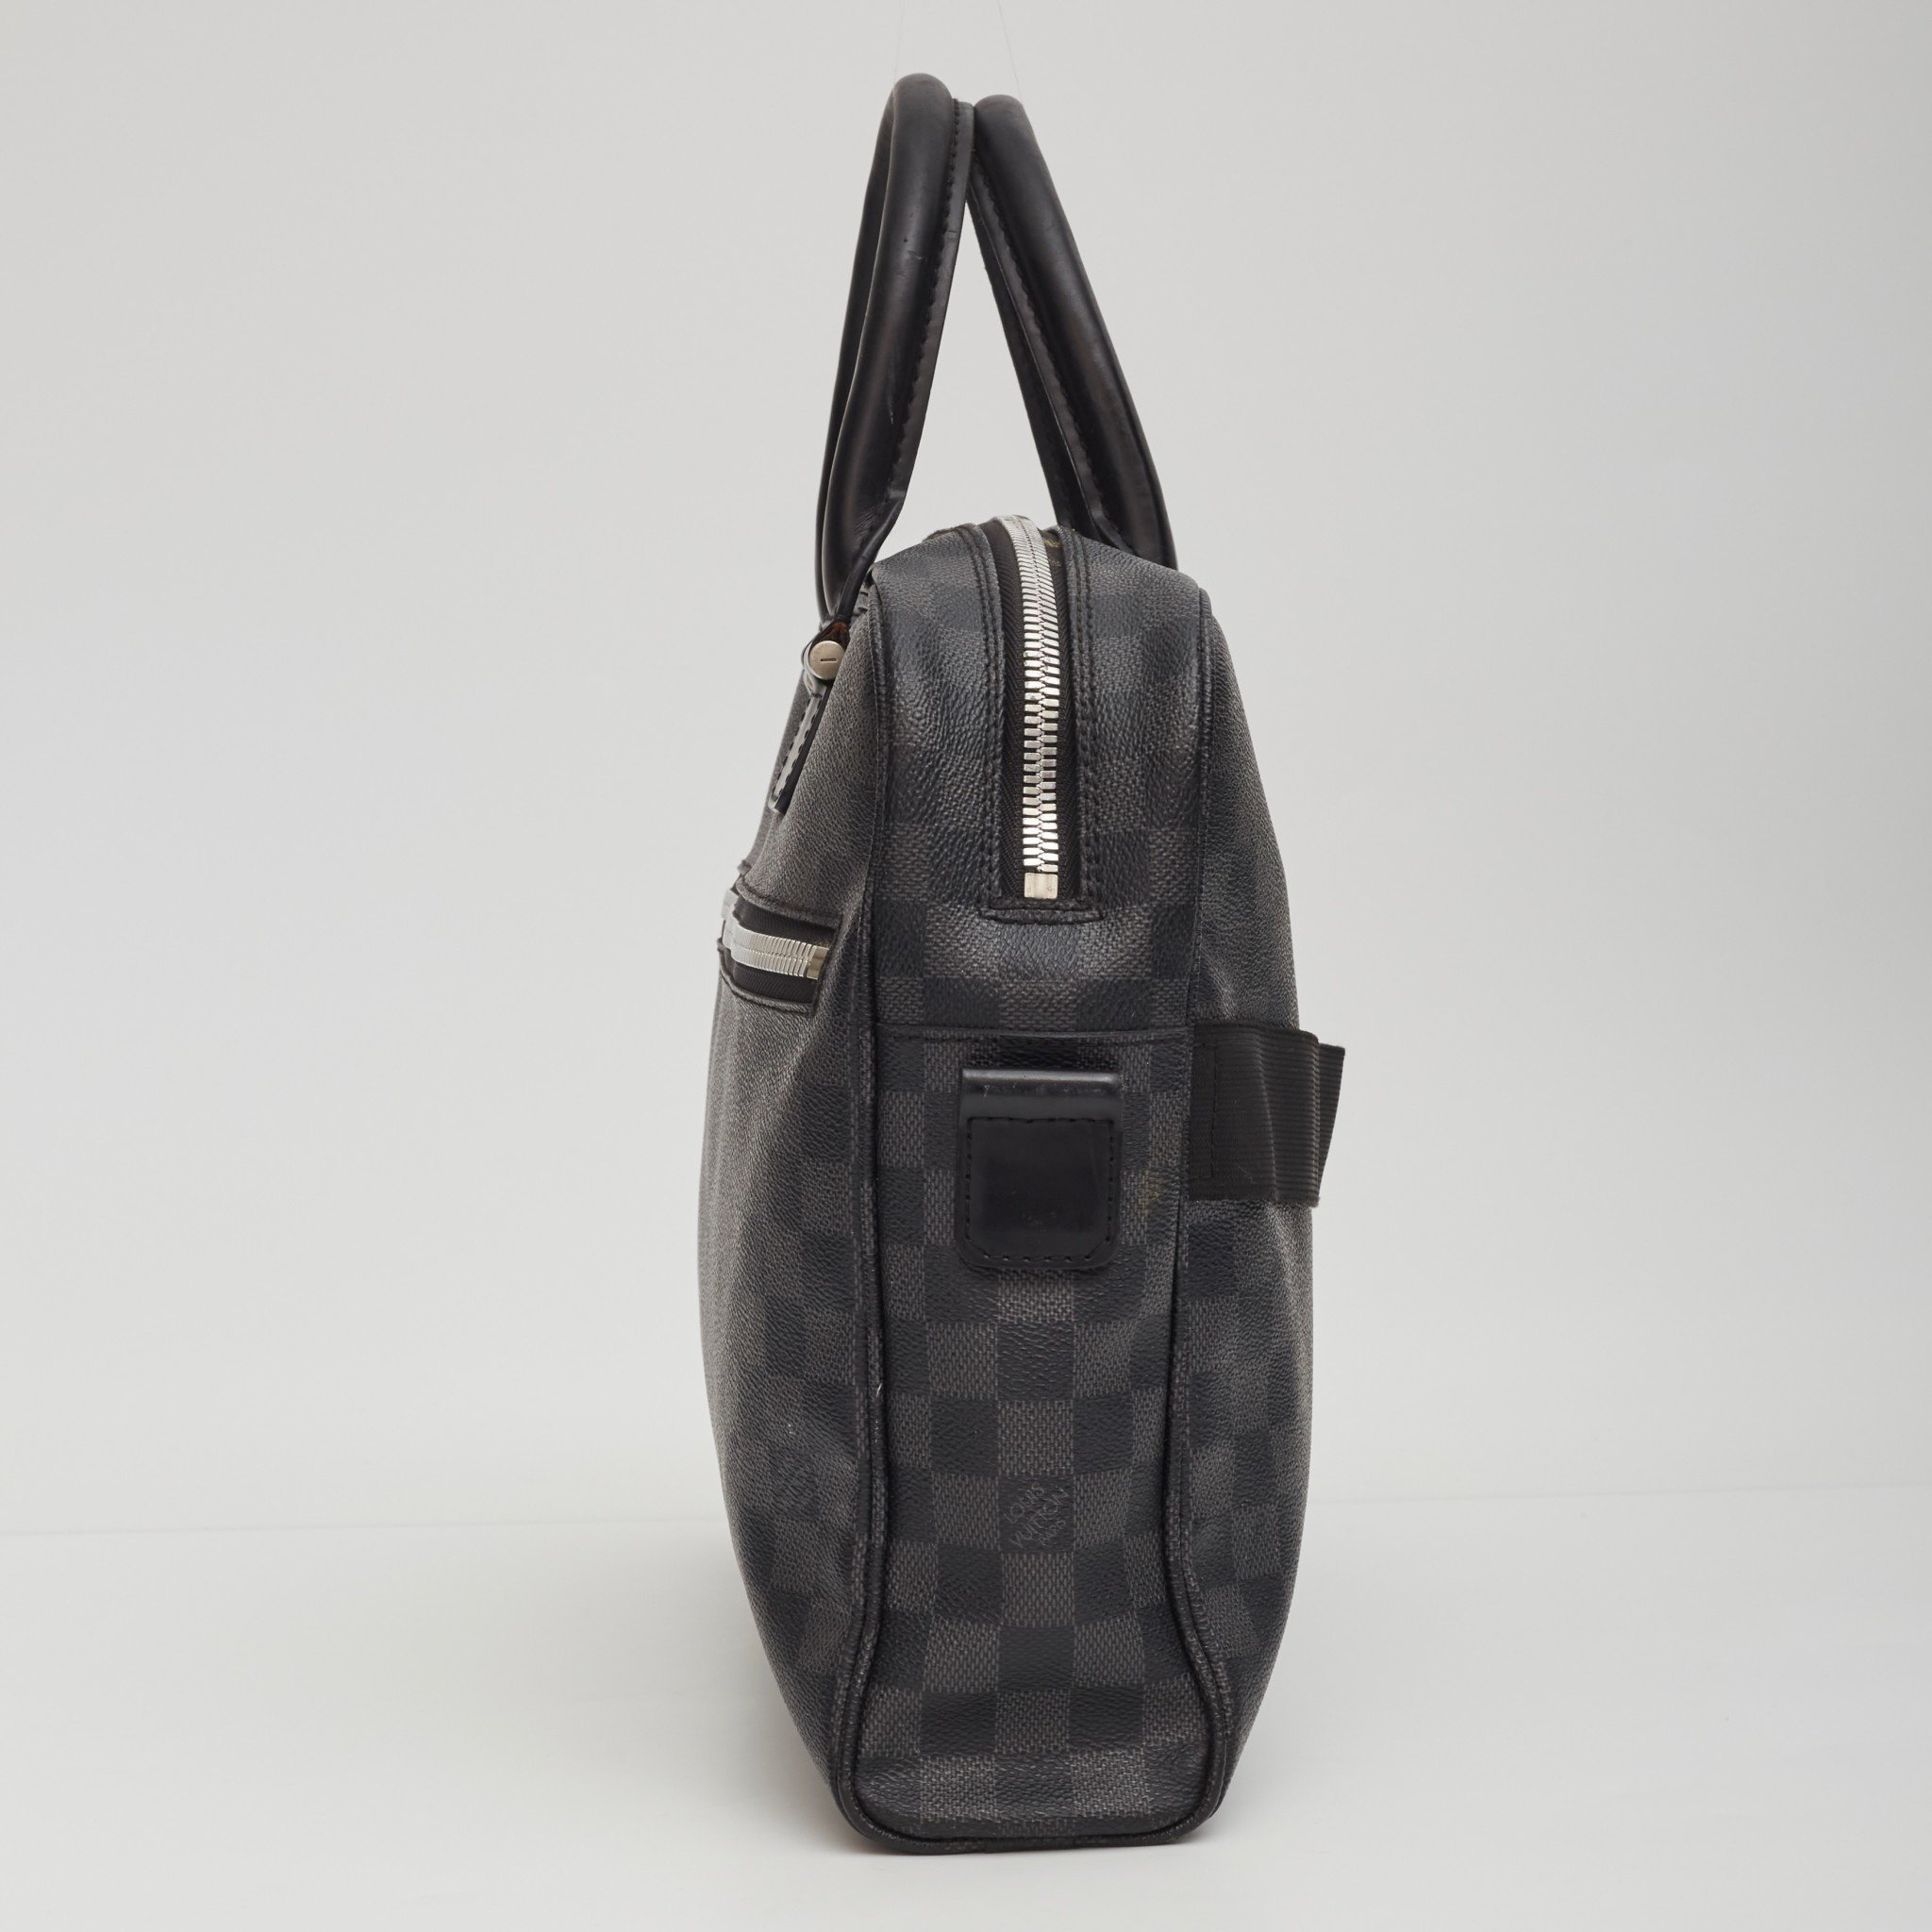 Backpack Briefcase #DamierGraphite #BusinessBag #LouisVuitton